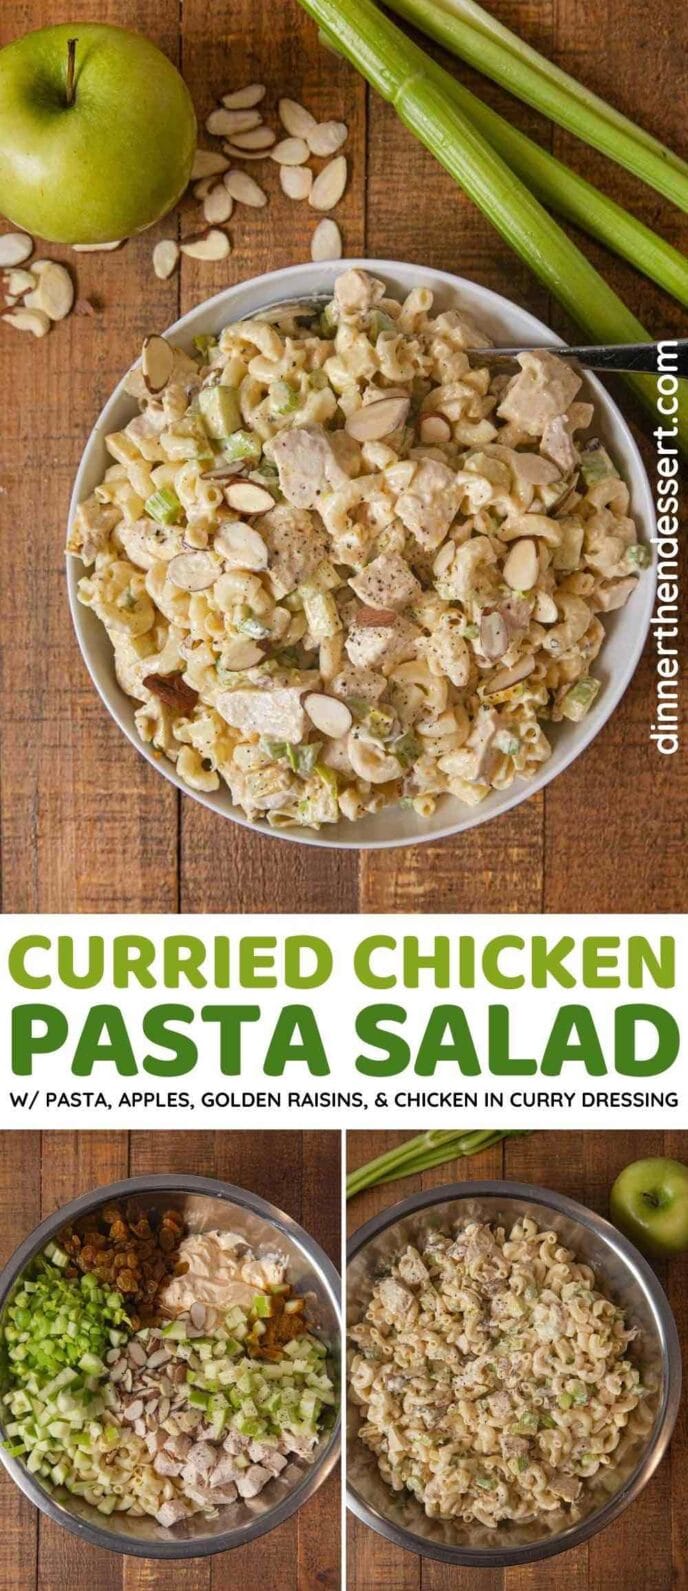 Curried Chicken Pasta Salad collage